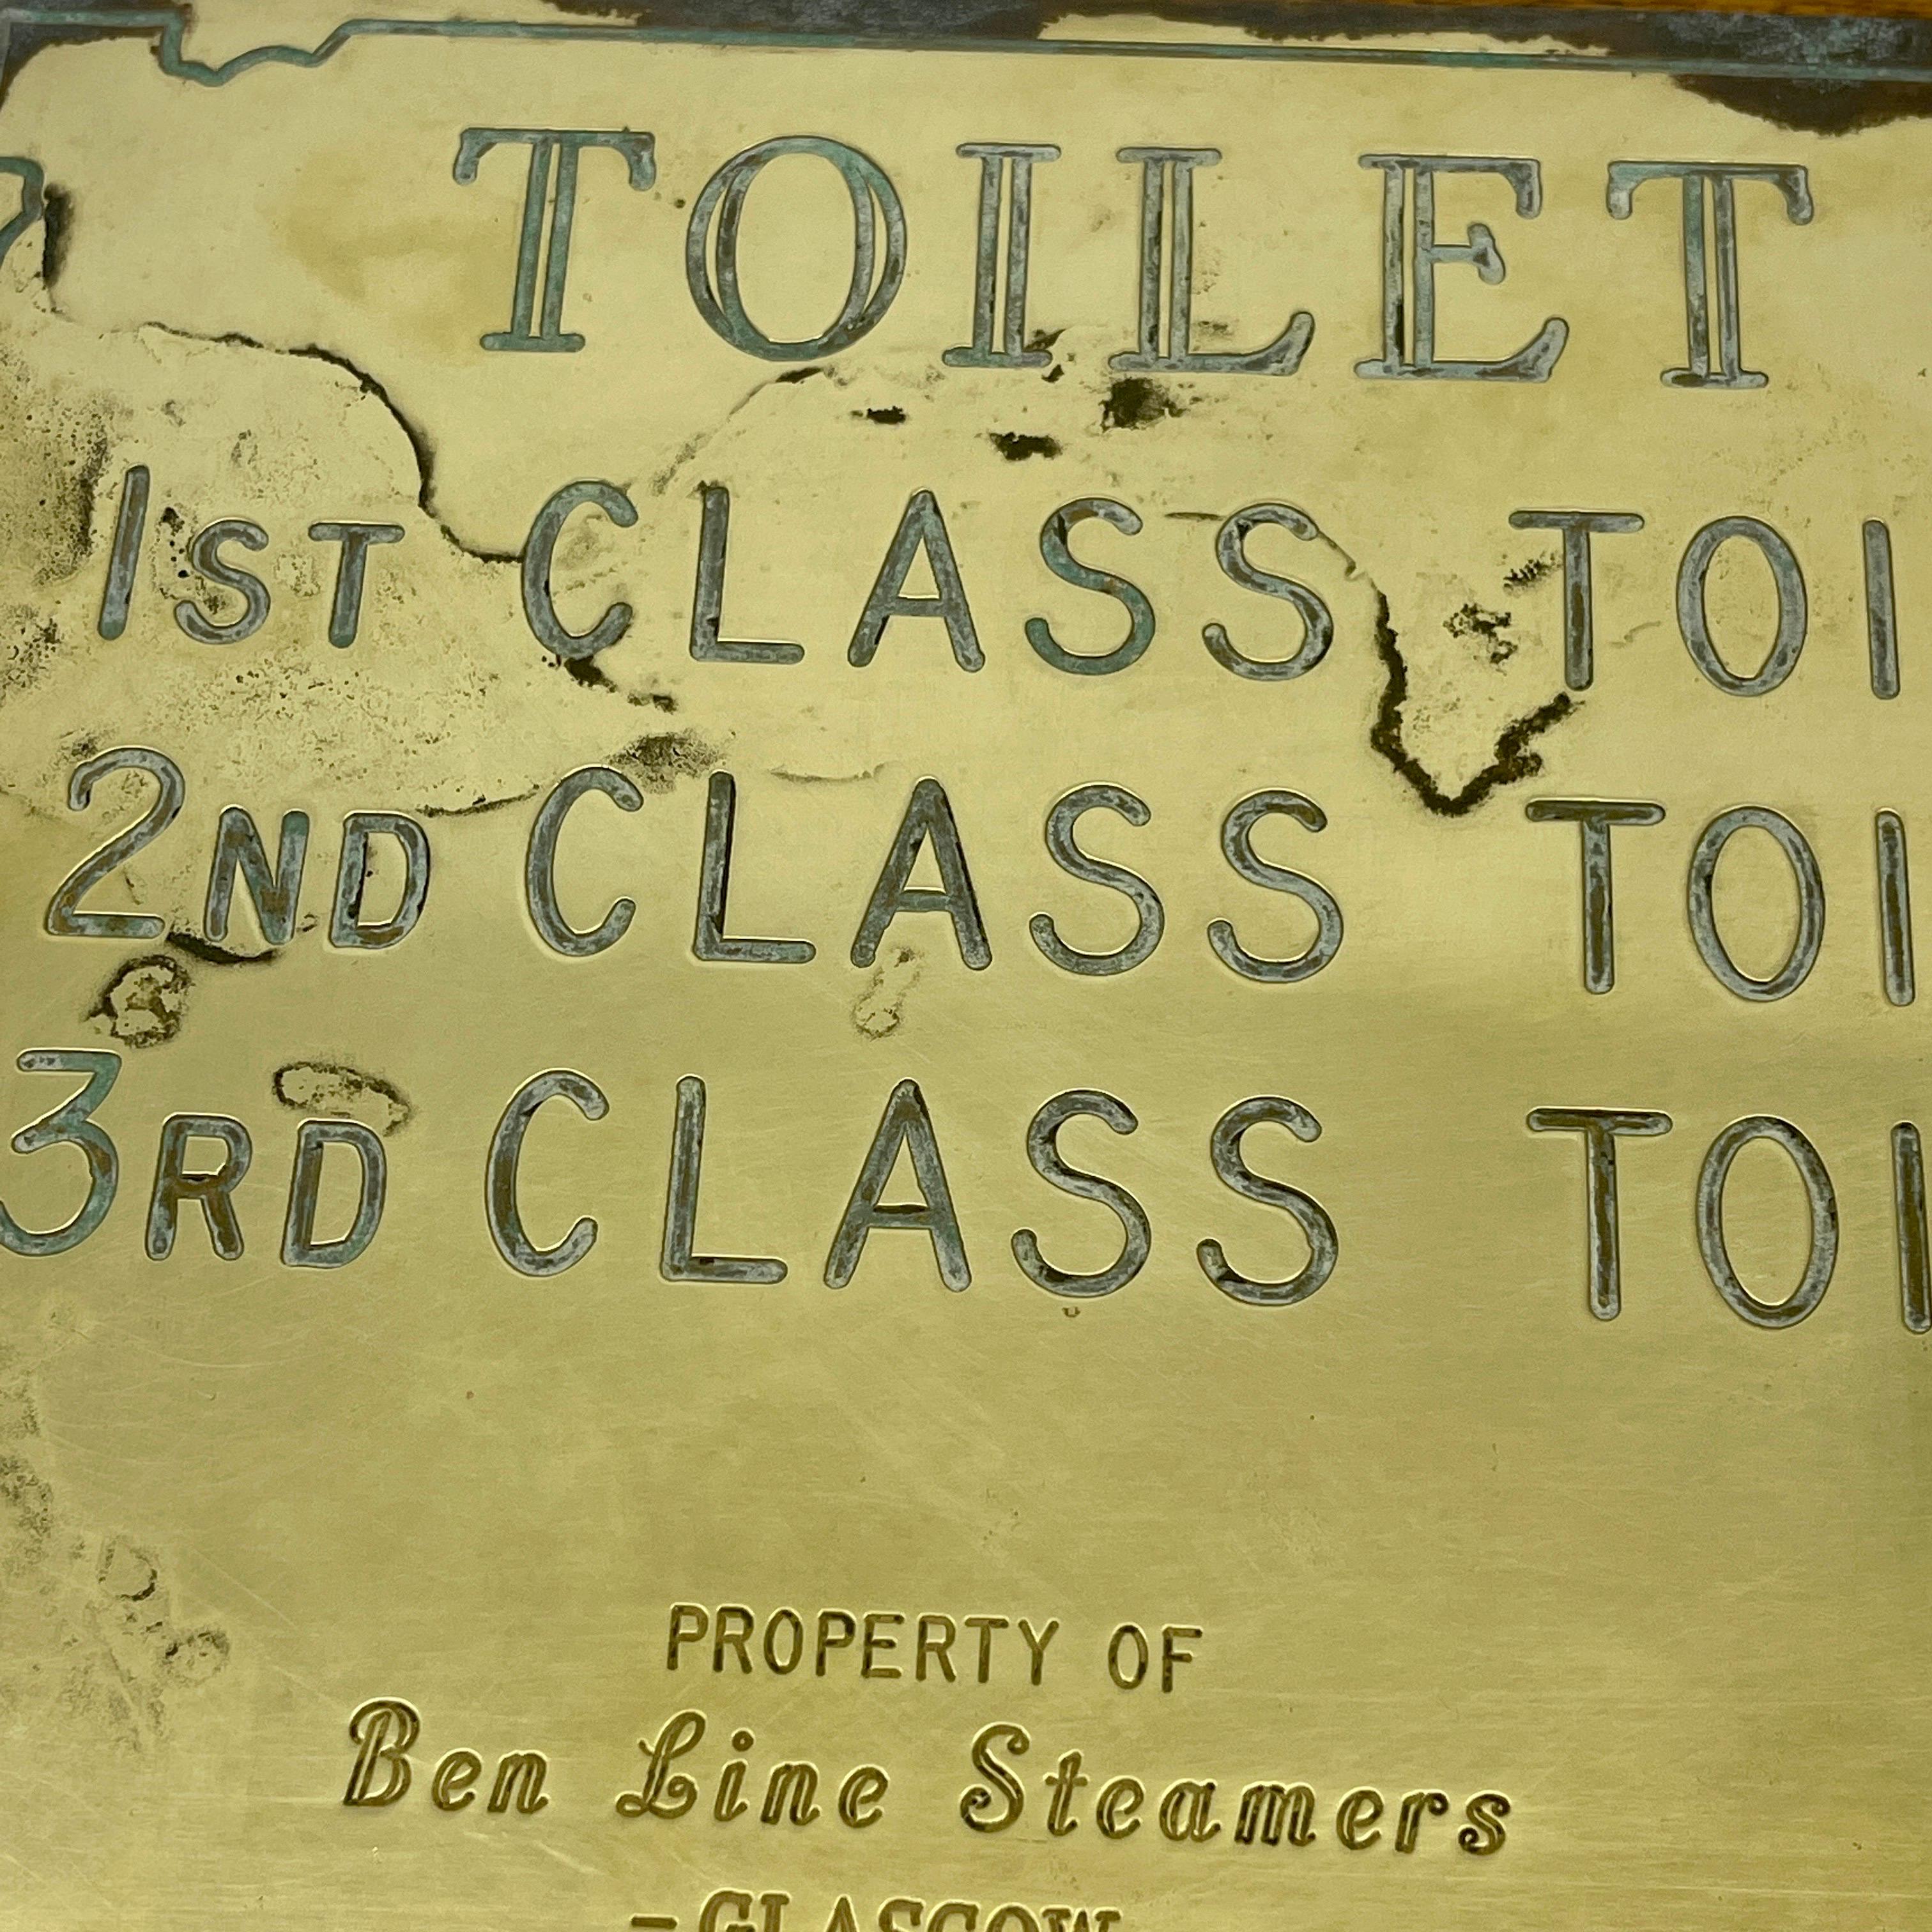 20th Century Antique Scottish Brass Toilet Tariff Plaque from Ben Line Steamers Glasgow